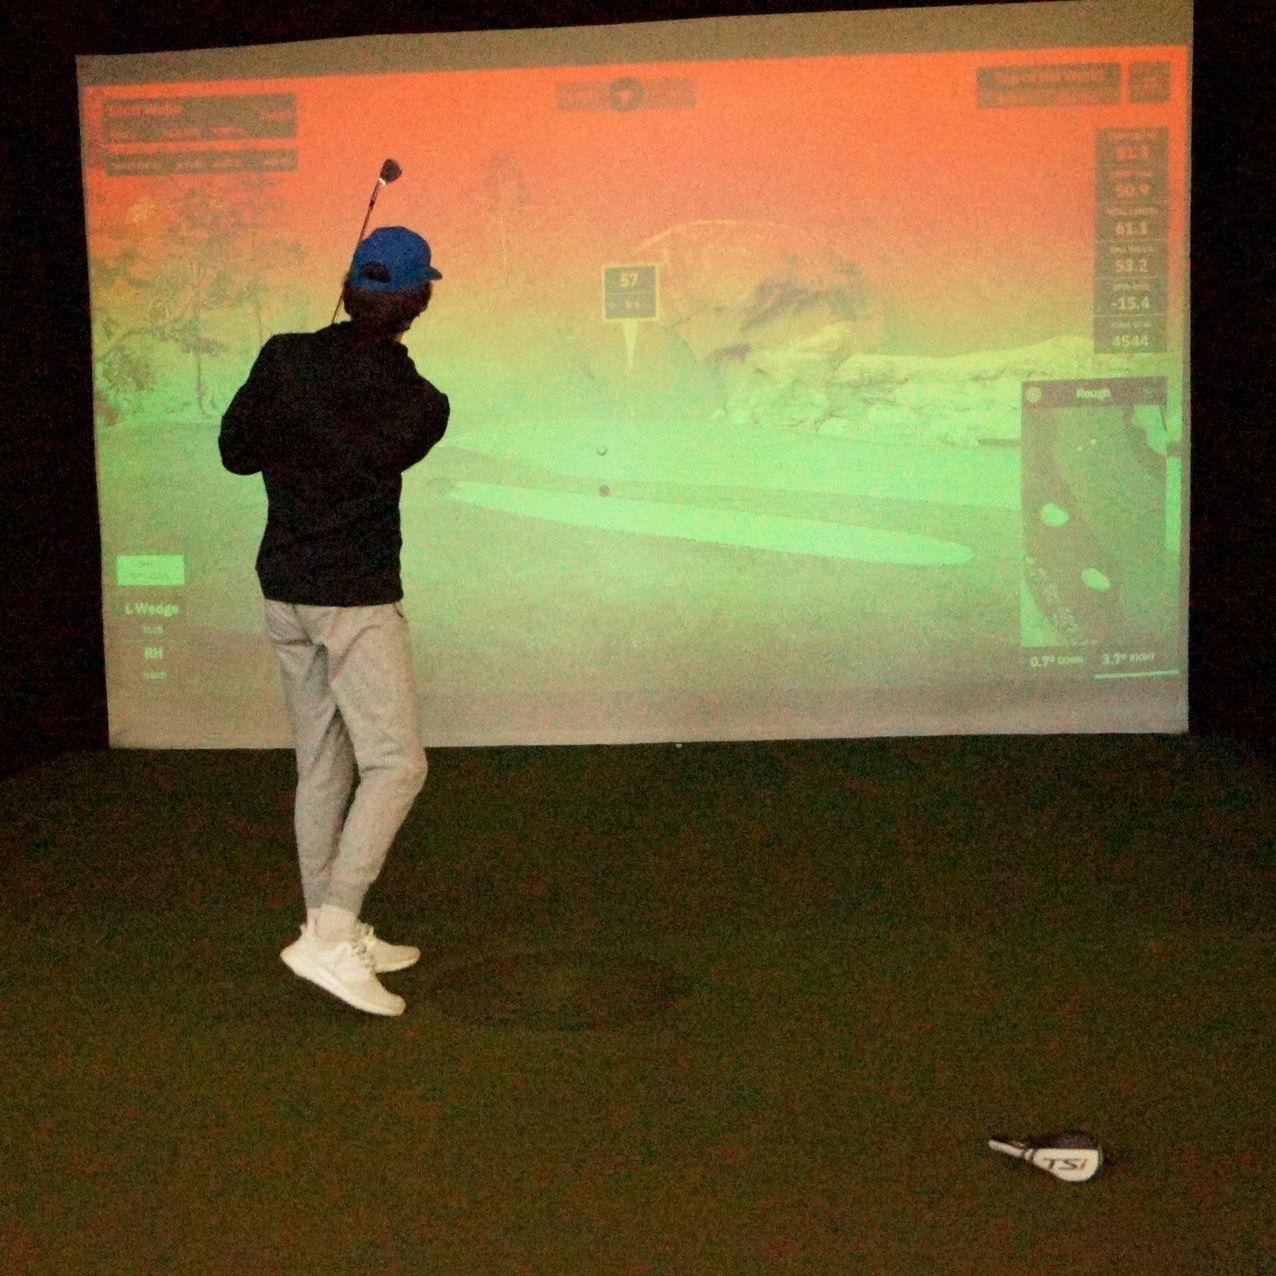 a man is swinging a golf club playing a round on a golf simulator